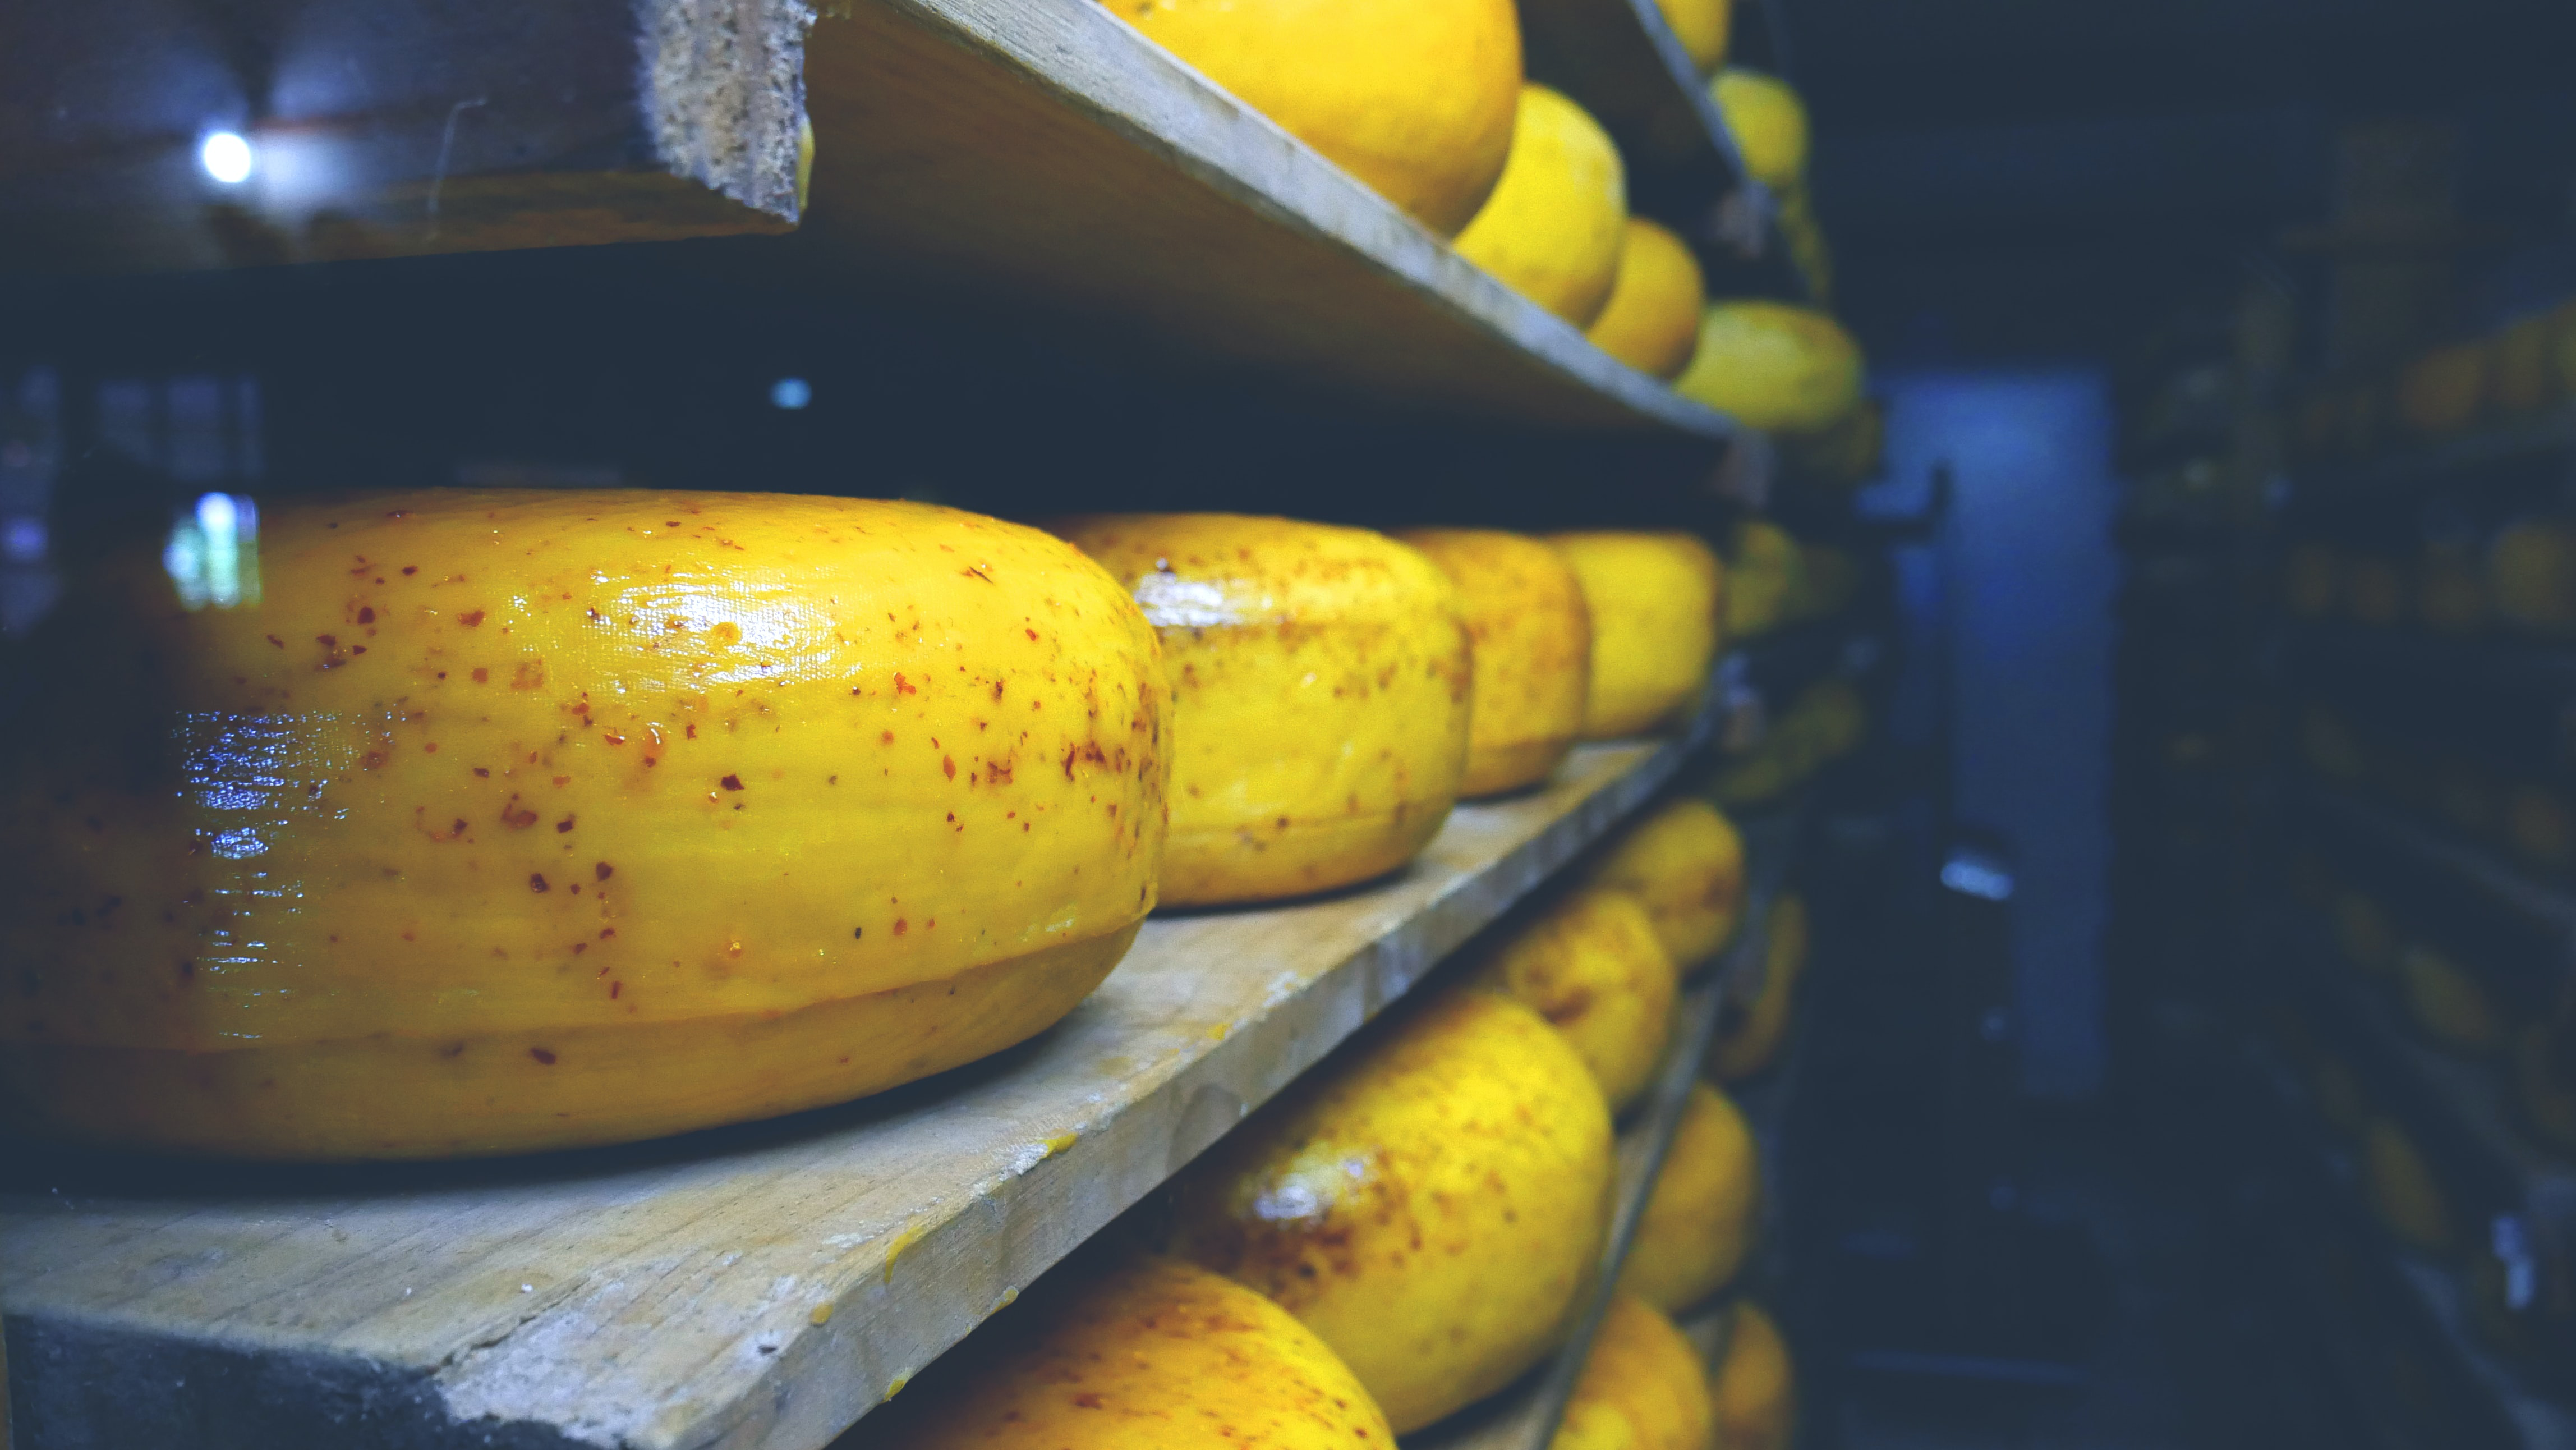 Kaas kan ook duurzaam - hier zijn drie innovaties om het lekker te houden